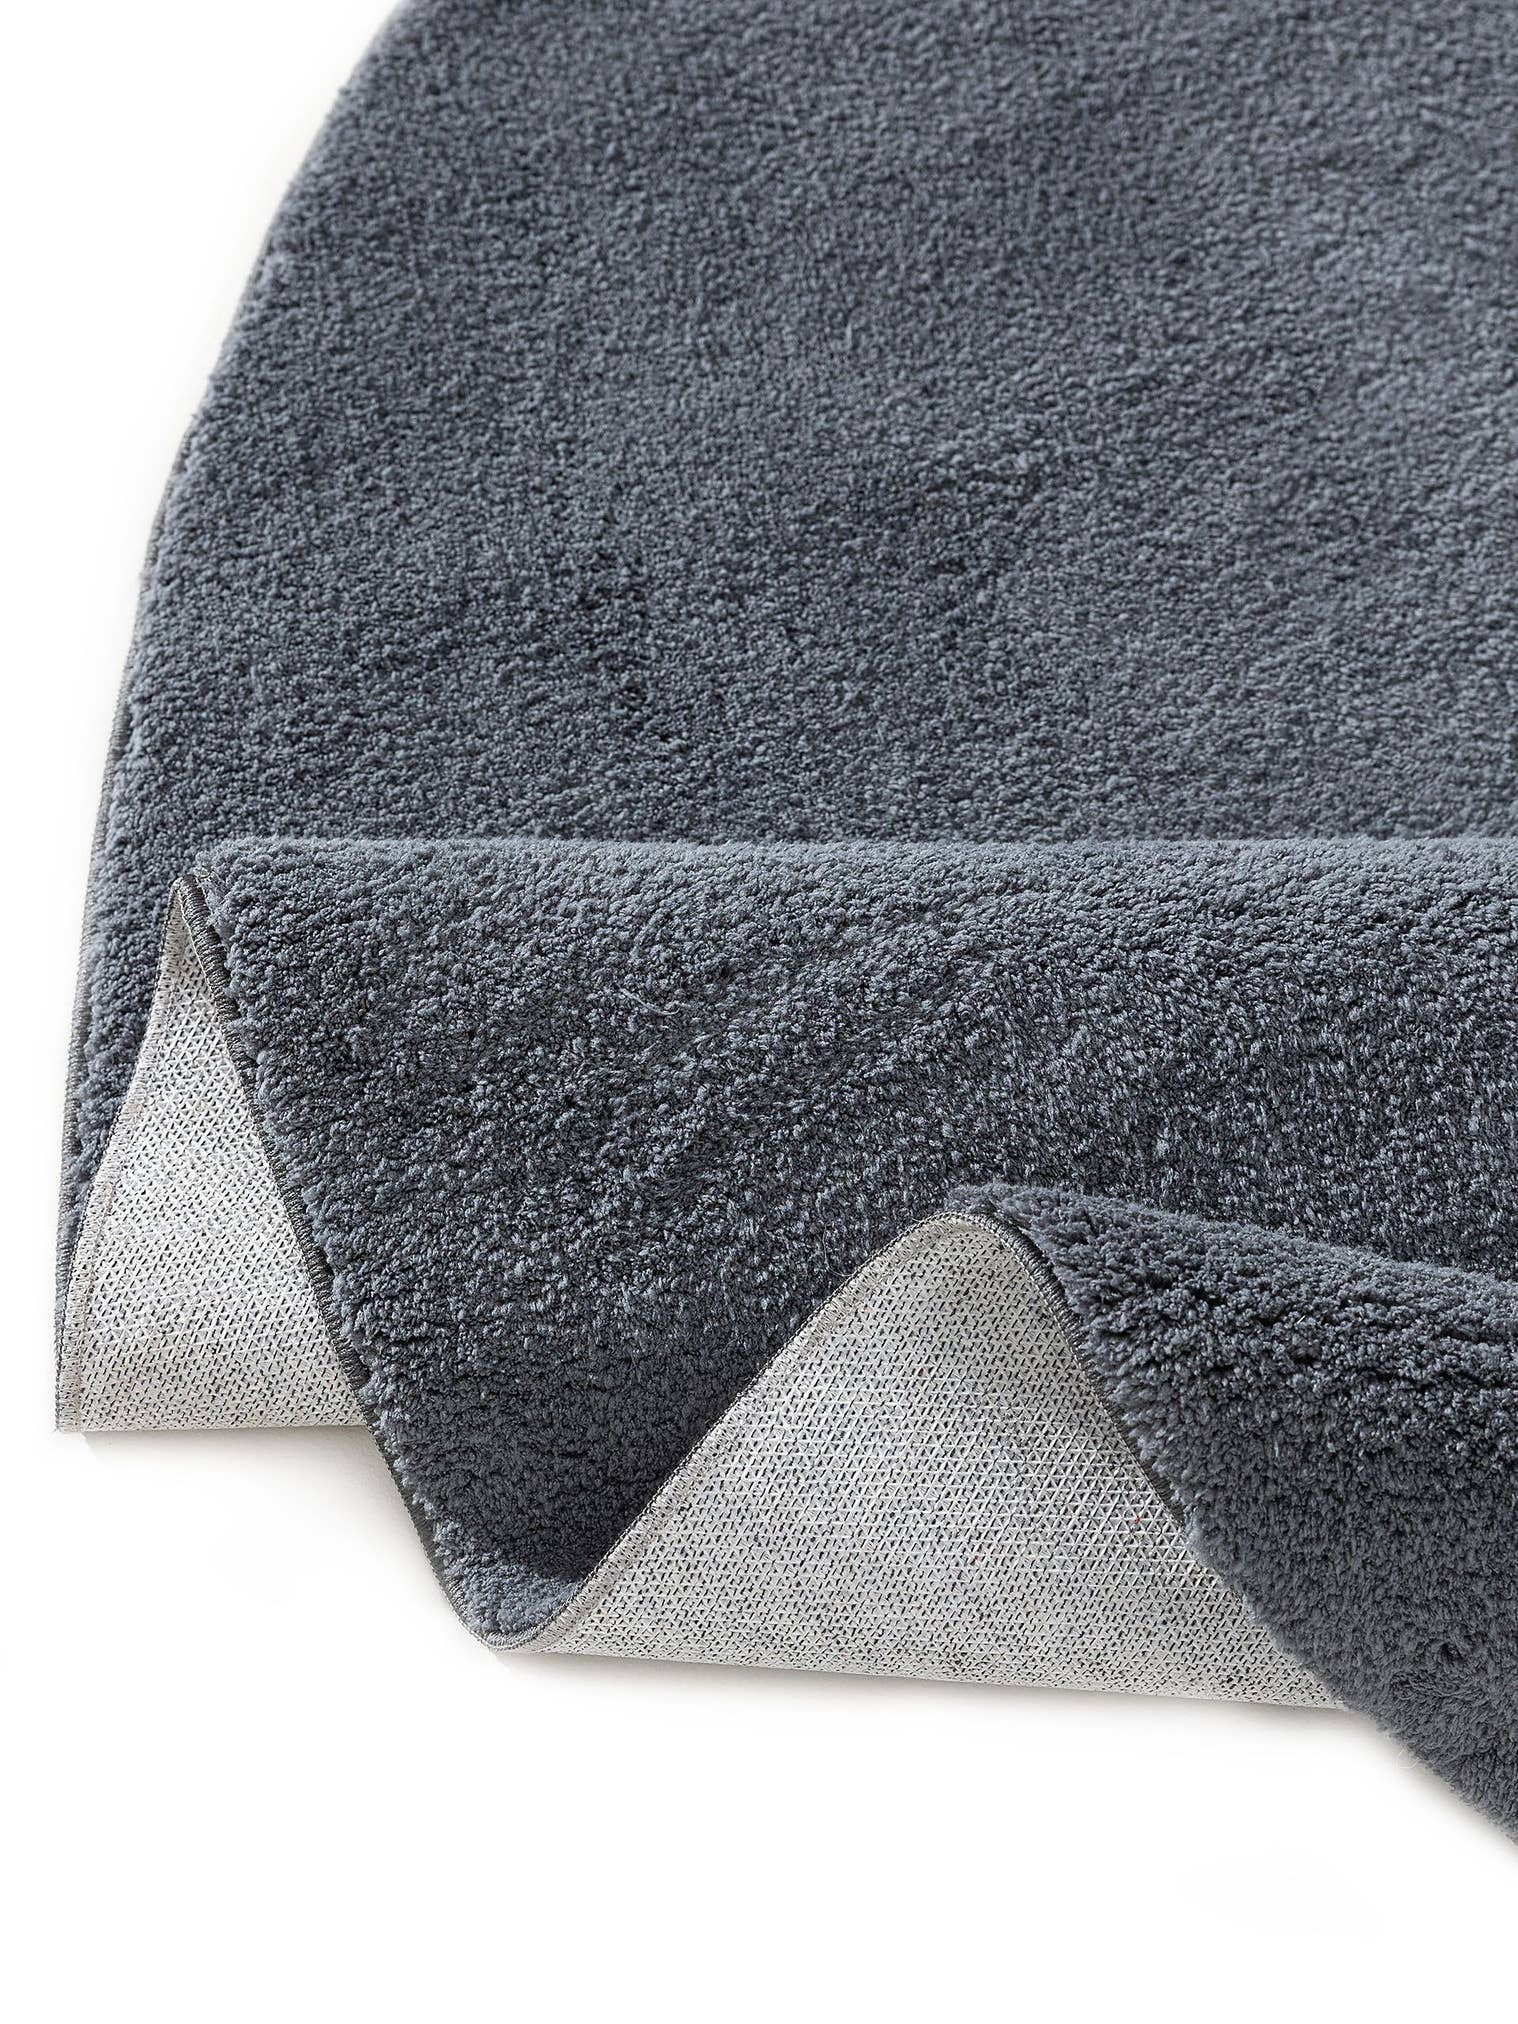 Teppich aus 100% Polyester in Schwarz mit 6 bis 10 mm hohem Flor von benuta Pop